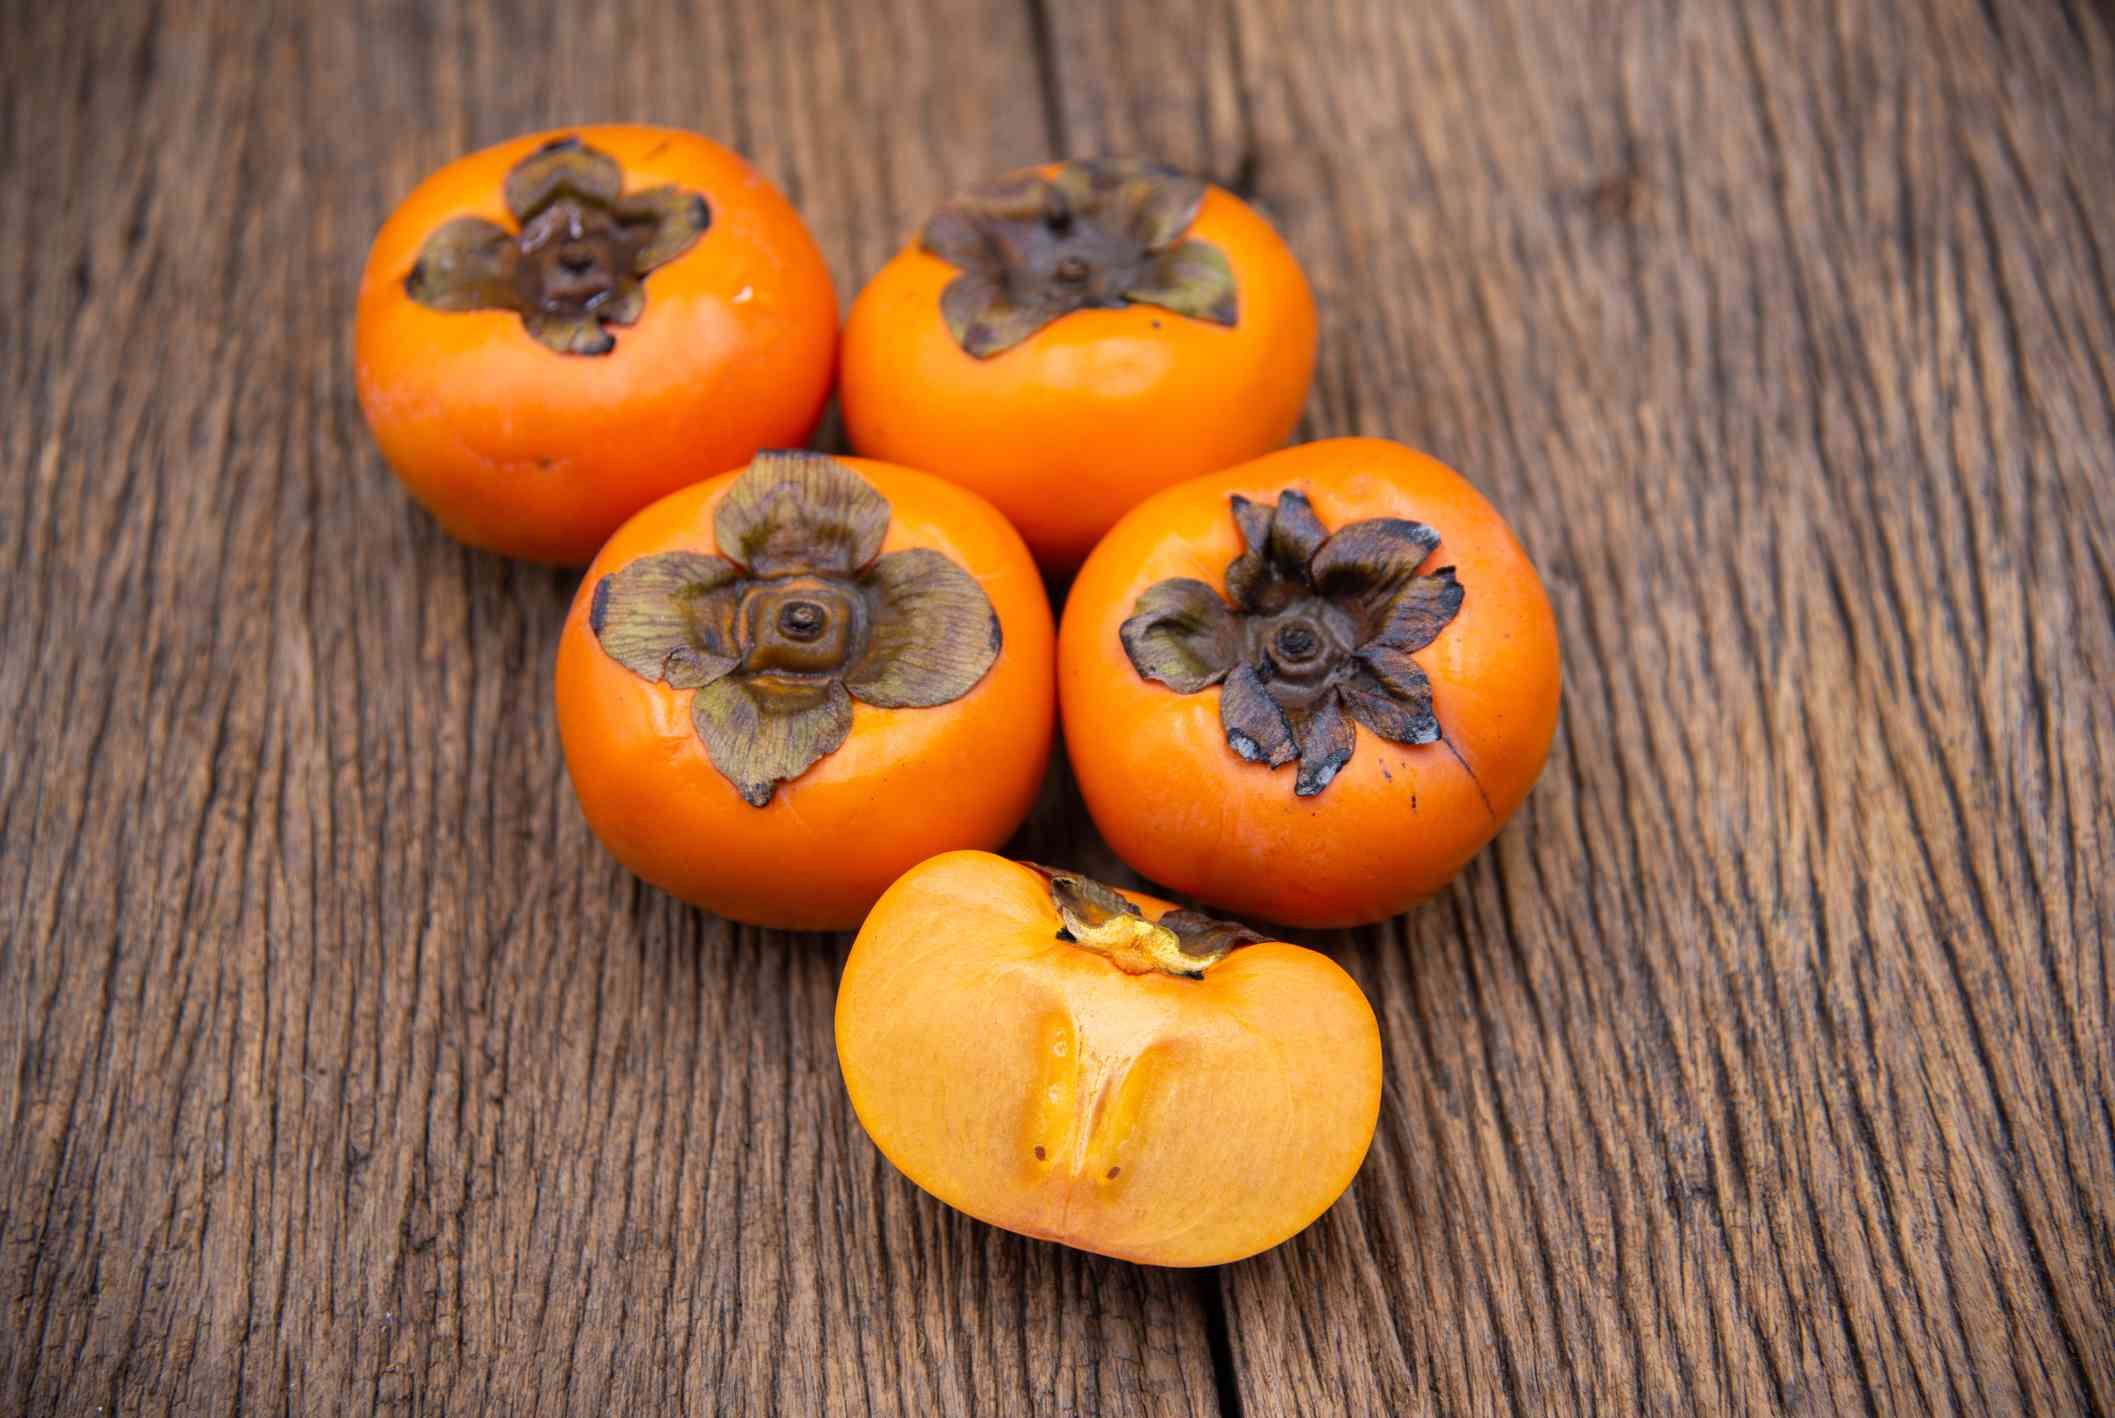 cinco caquis de color naranja Fuyu, uno de ellos cortado por la mitad, sobre una vieja mesa de madera